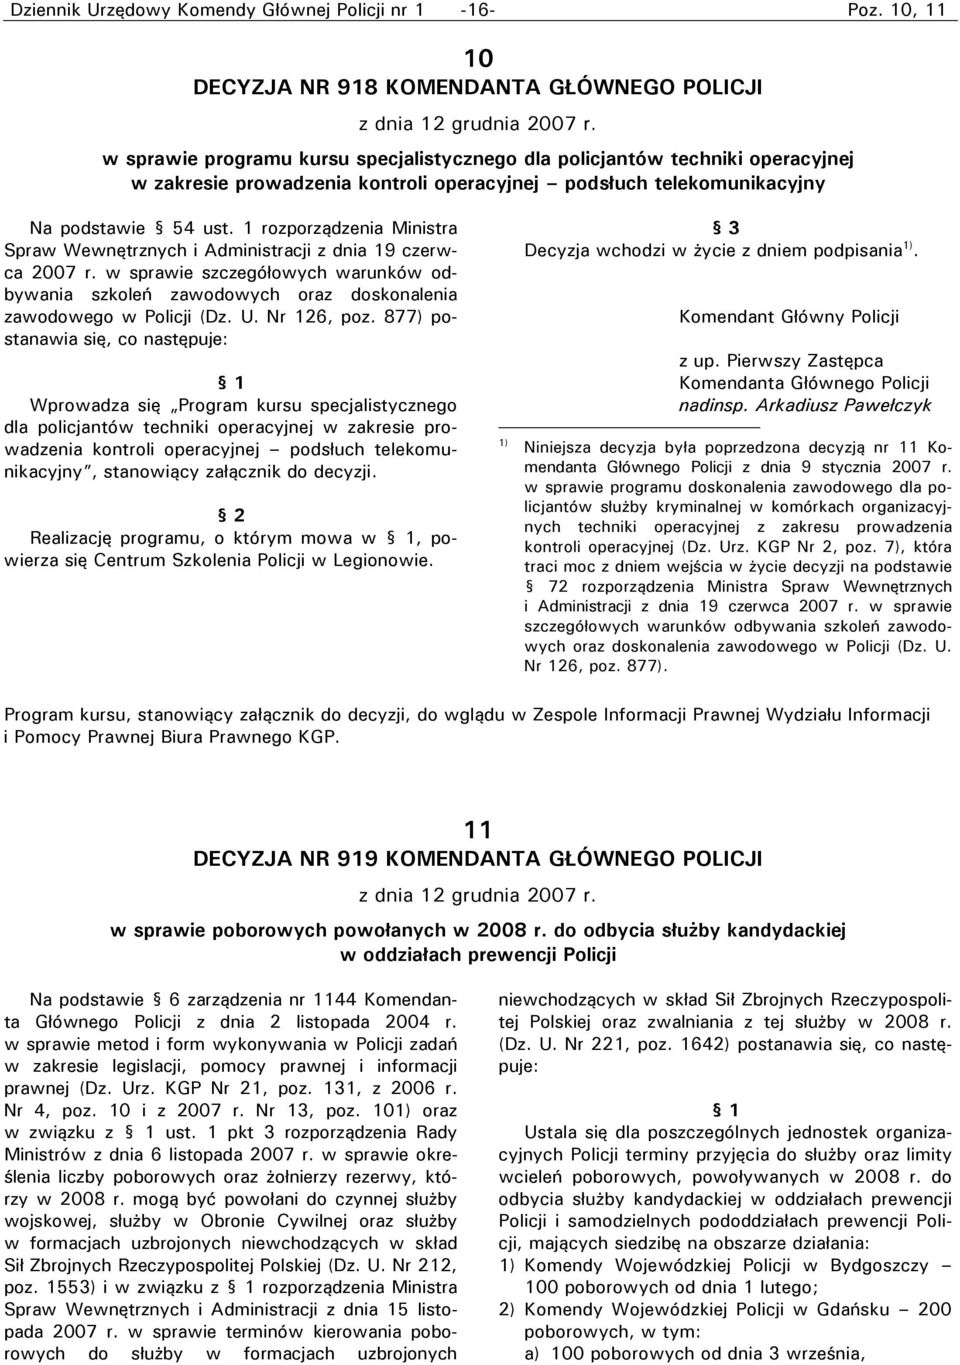 1 rozporządzenia Ministra Spraw Wewnętrznych i Administracji z dnia 19 czerwca 2007 r. w sprawie szczegółowych warunków odbywania szkoleń zawodowych oraz doskonalenia zawodowego w Policji (Dz. U.